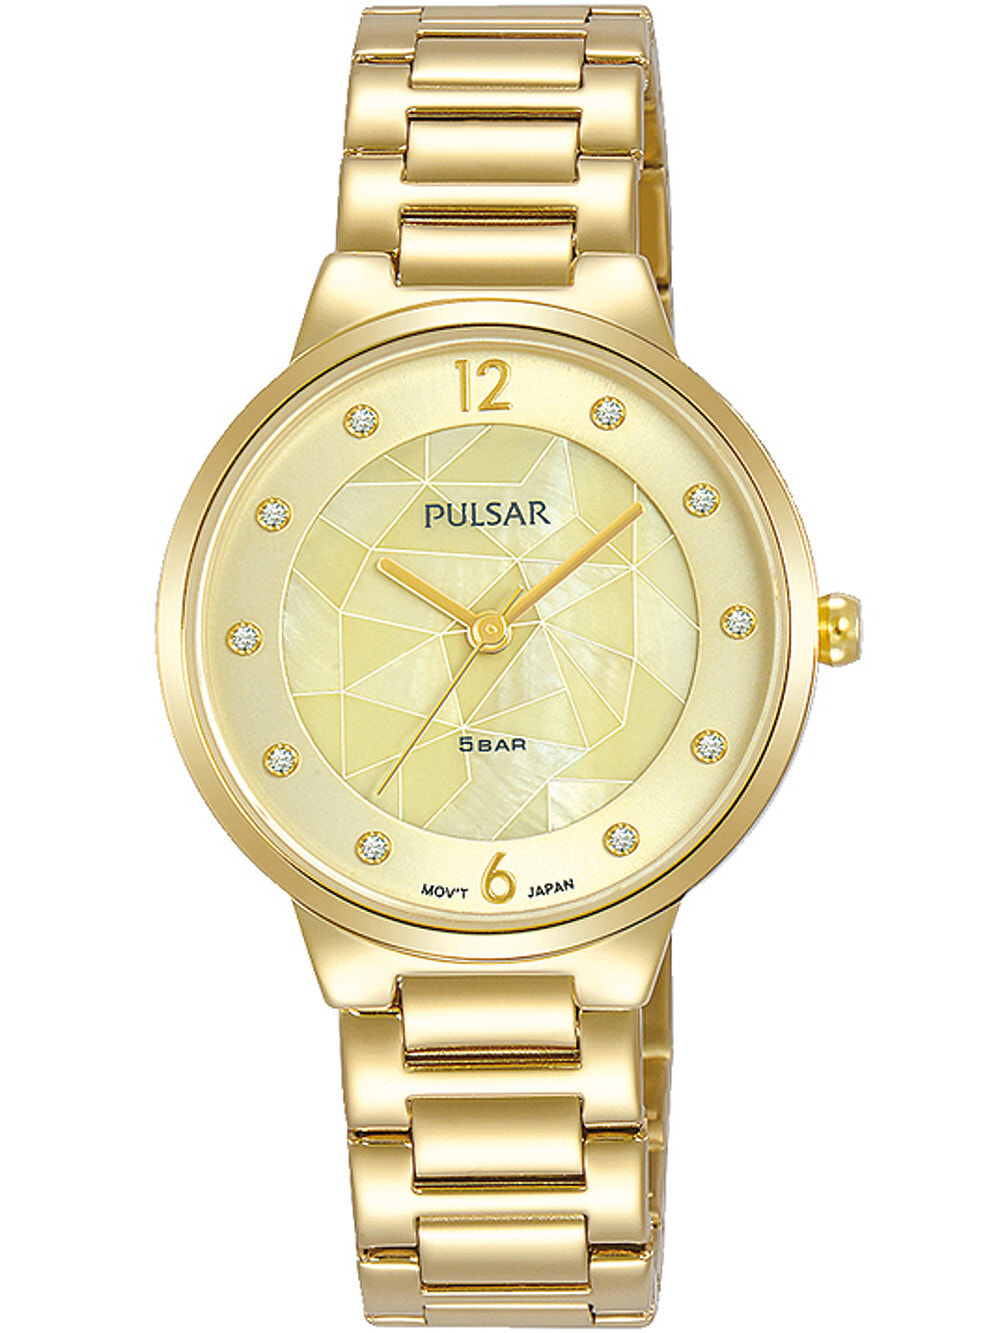 Женские наручные кварцевые часы  Pulsar  ремешок из нержавеющей стали. Водонепроницаемость-5 АТМ. Защищенное от царапин минеральное стекло.  Циферблат декорирован камнями Swarovski.